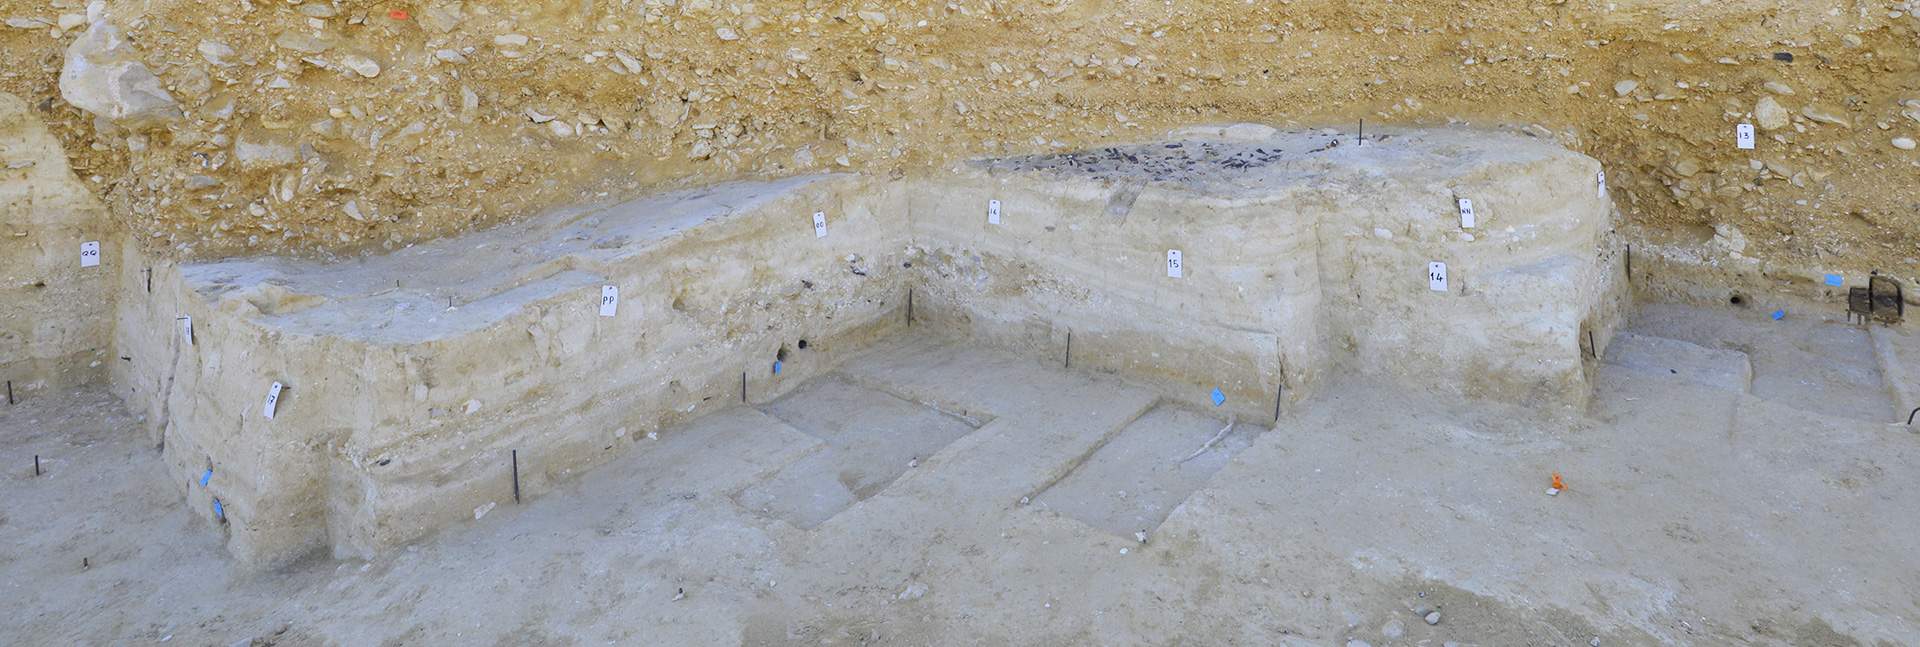 מבט על האתר הארכיאולוגי בוקר תחתית בשמורת עין עבדת